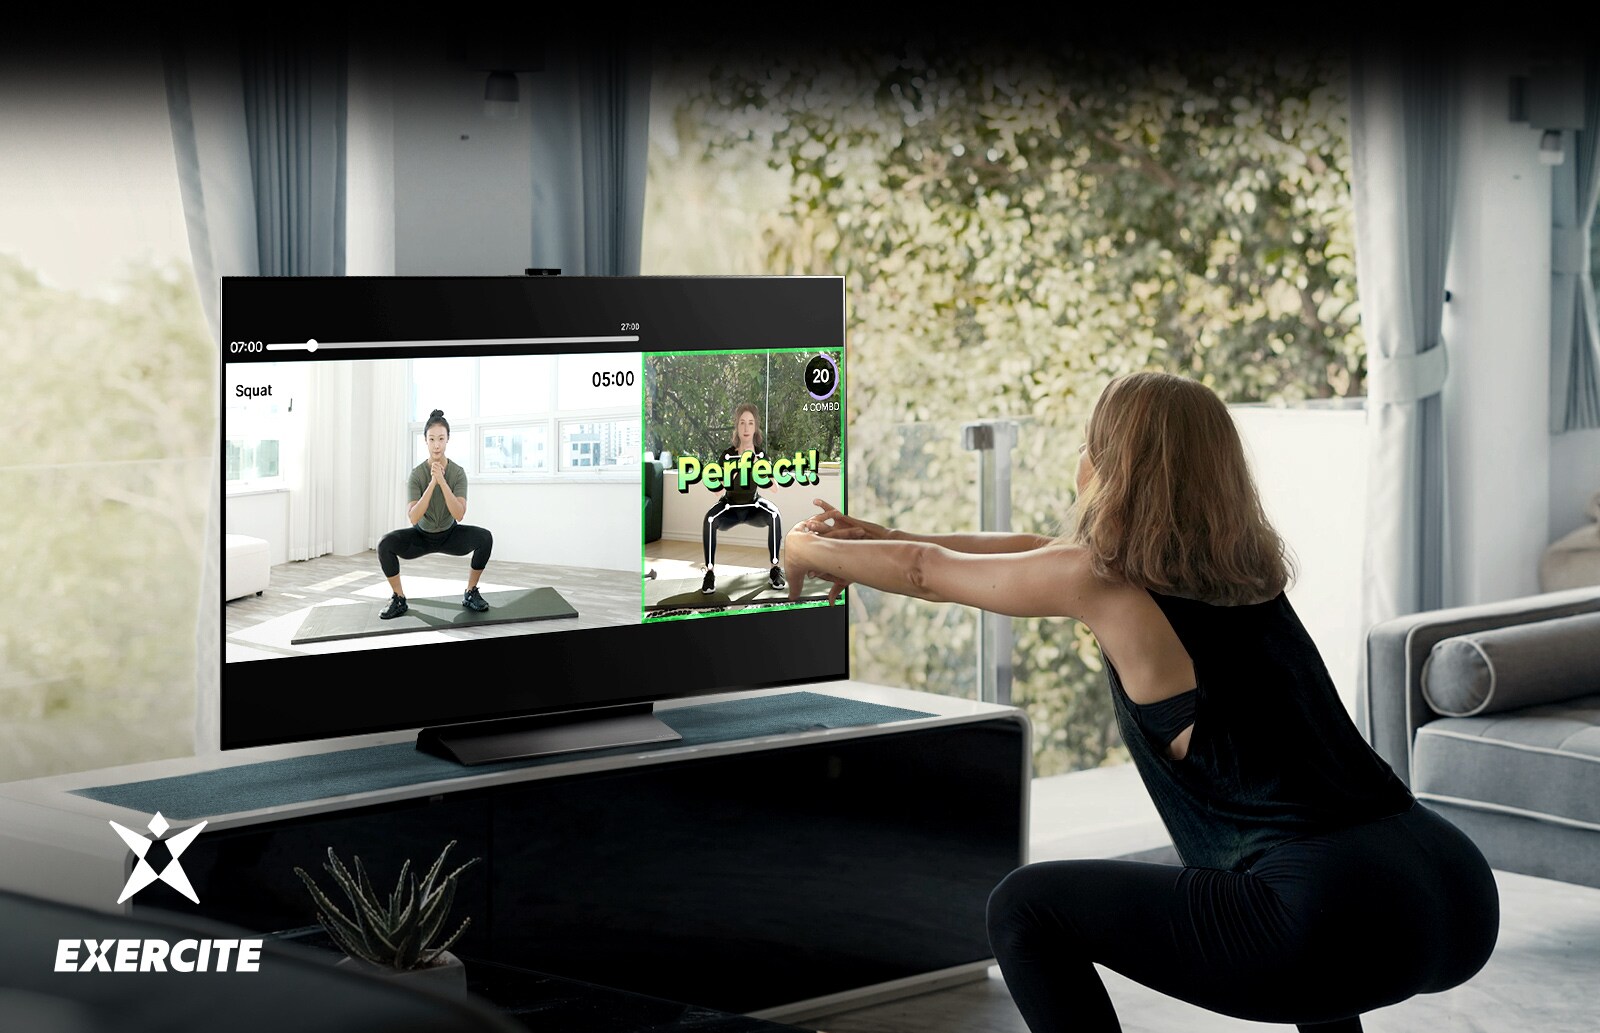  Uma mulher está a fazer agachamentos enquanto assiste TV. No ecrã da TV, pode ver imagens que lhe ensinam a exercitar-se e a verificar a sua postura.